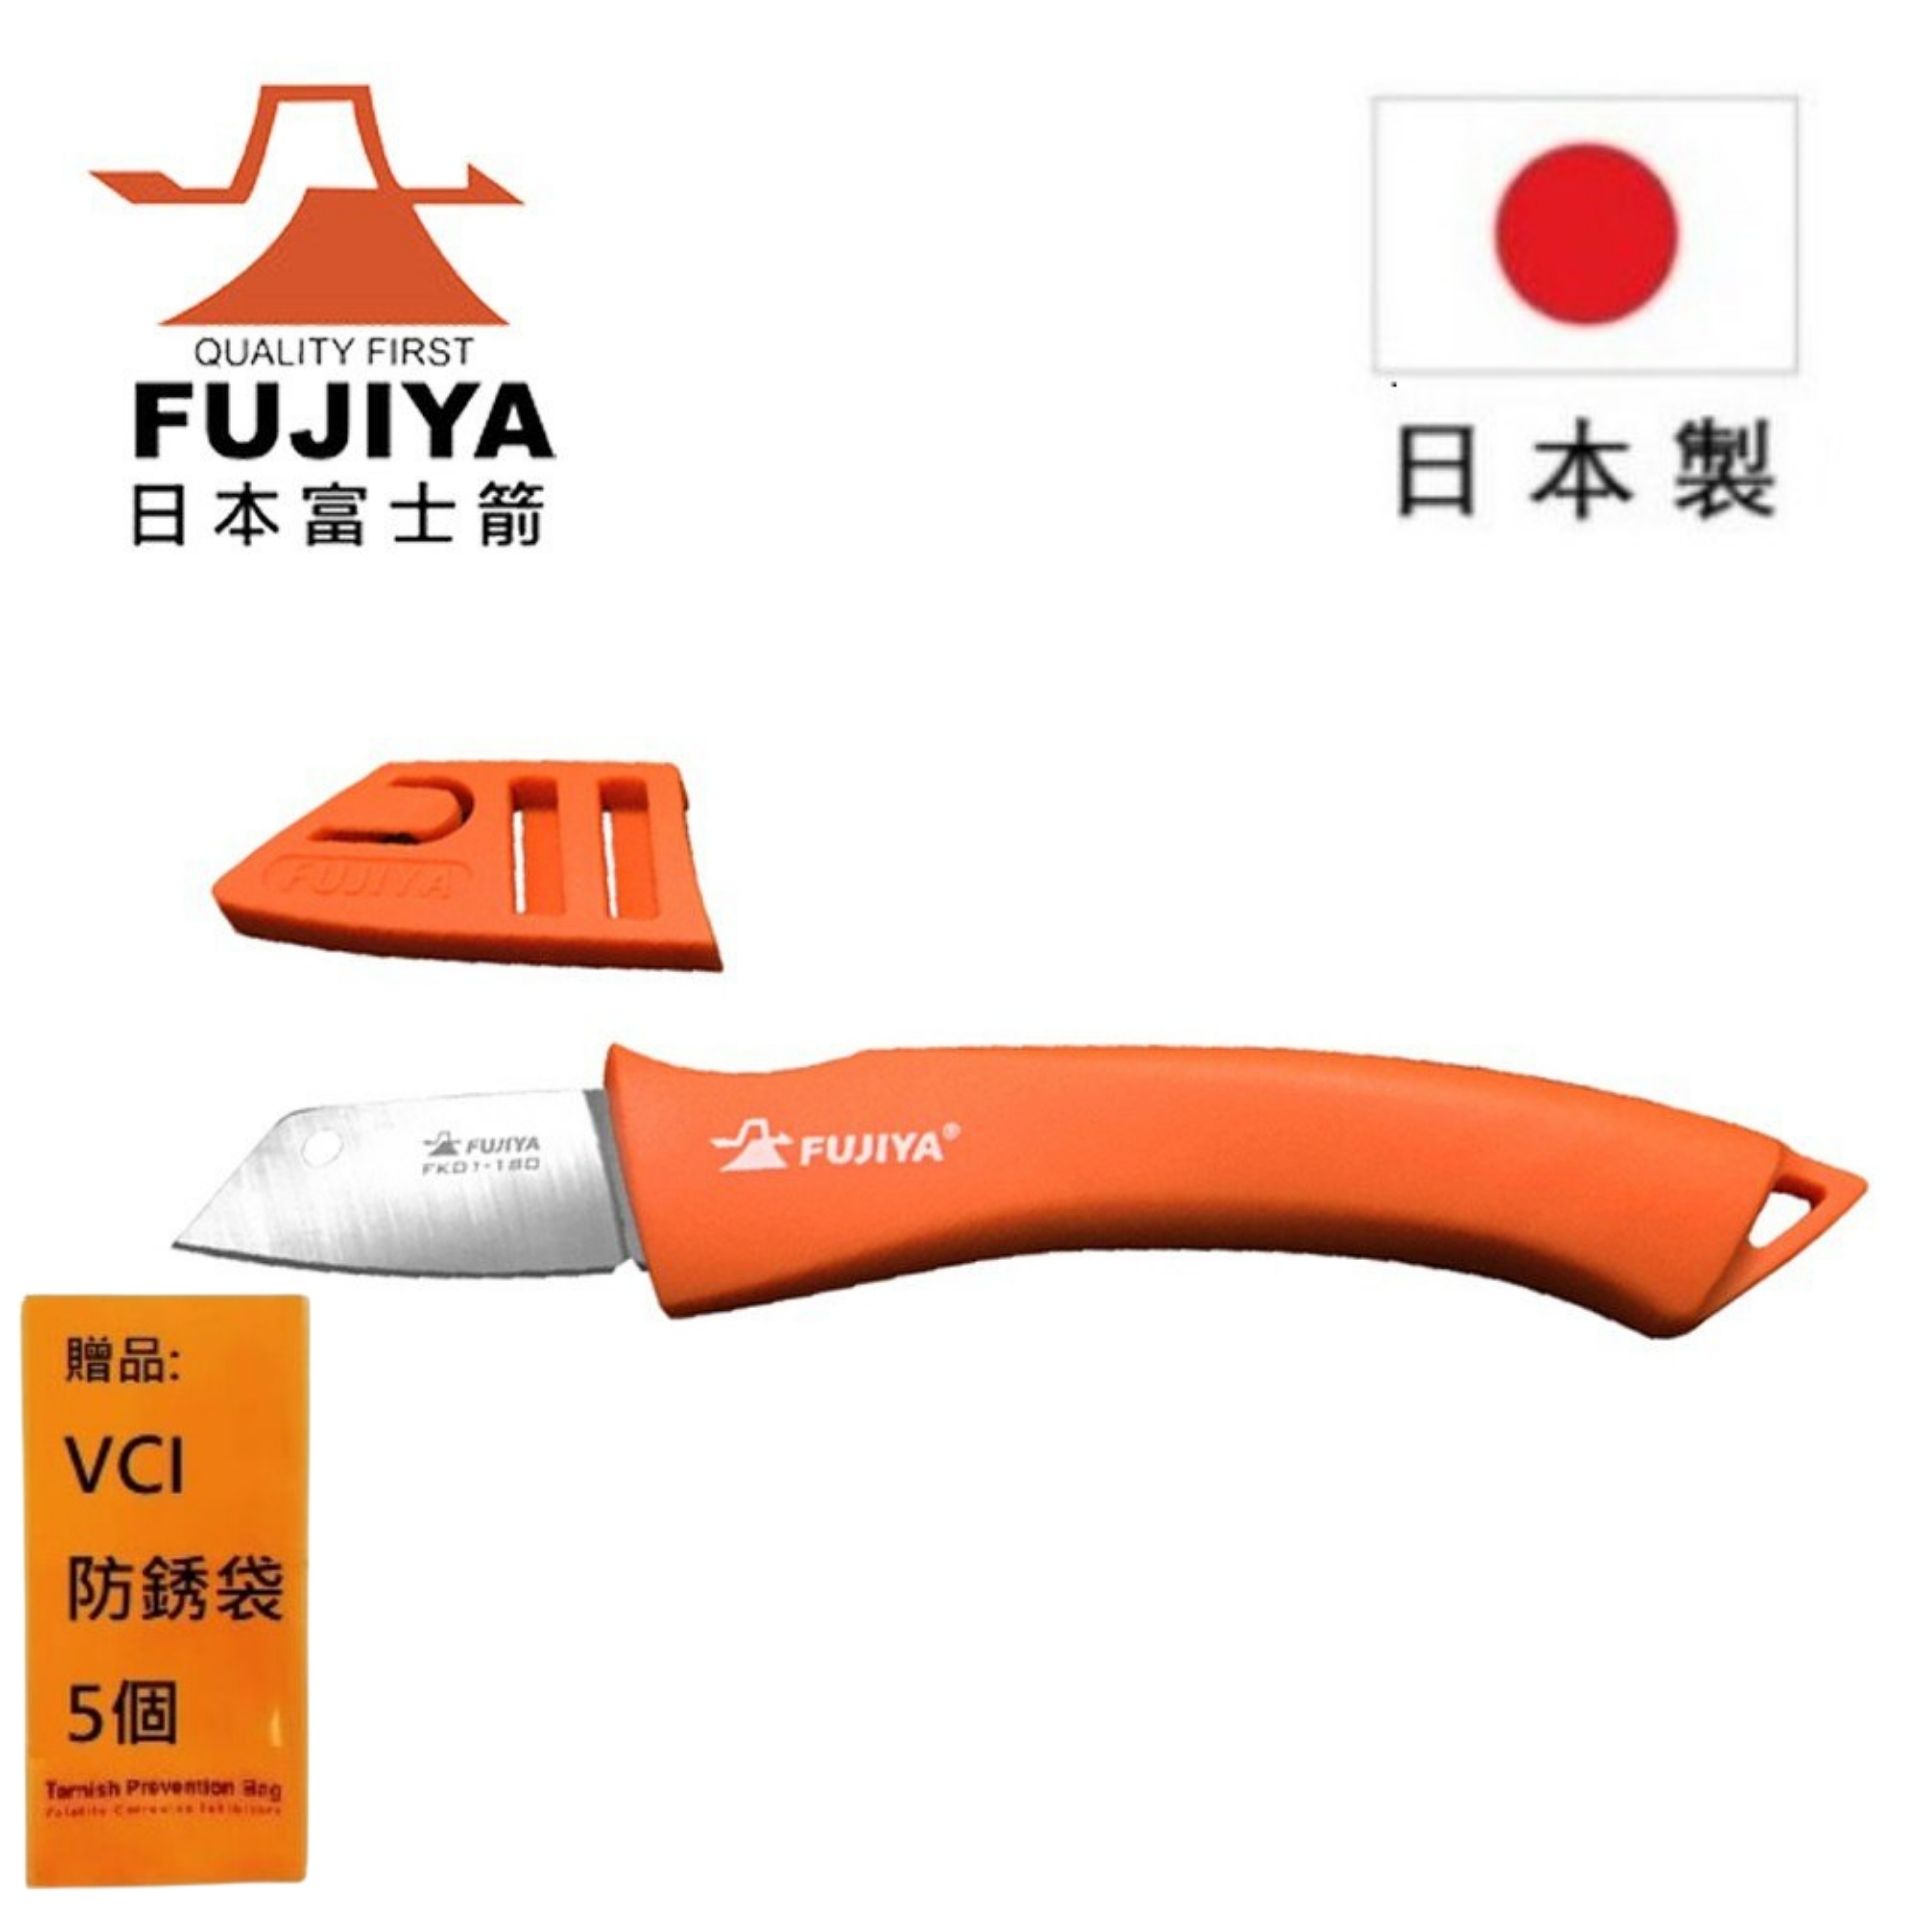 【日本Fujiya富士箭】 電工刀 FK01-180